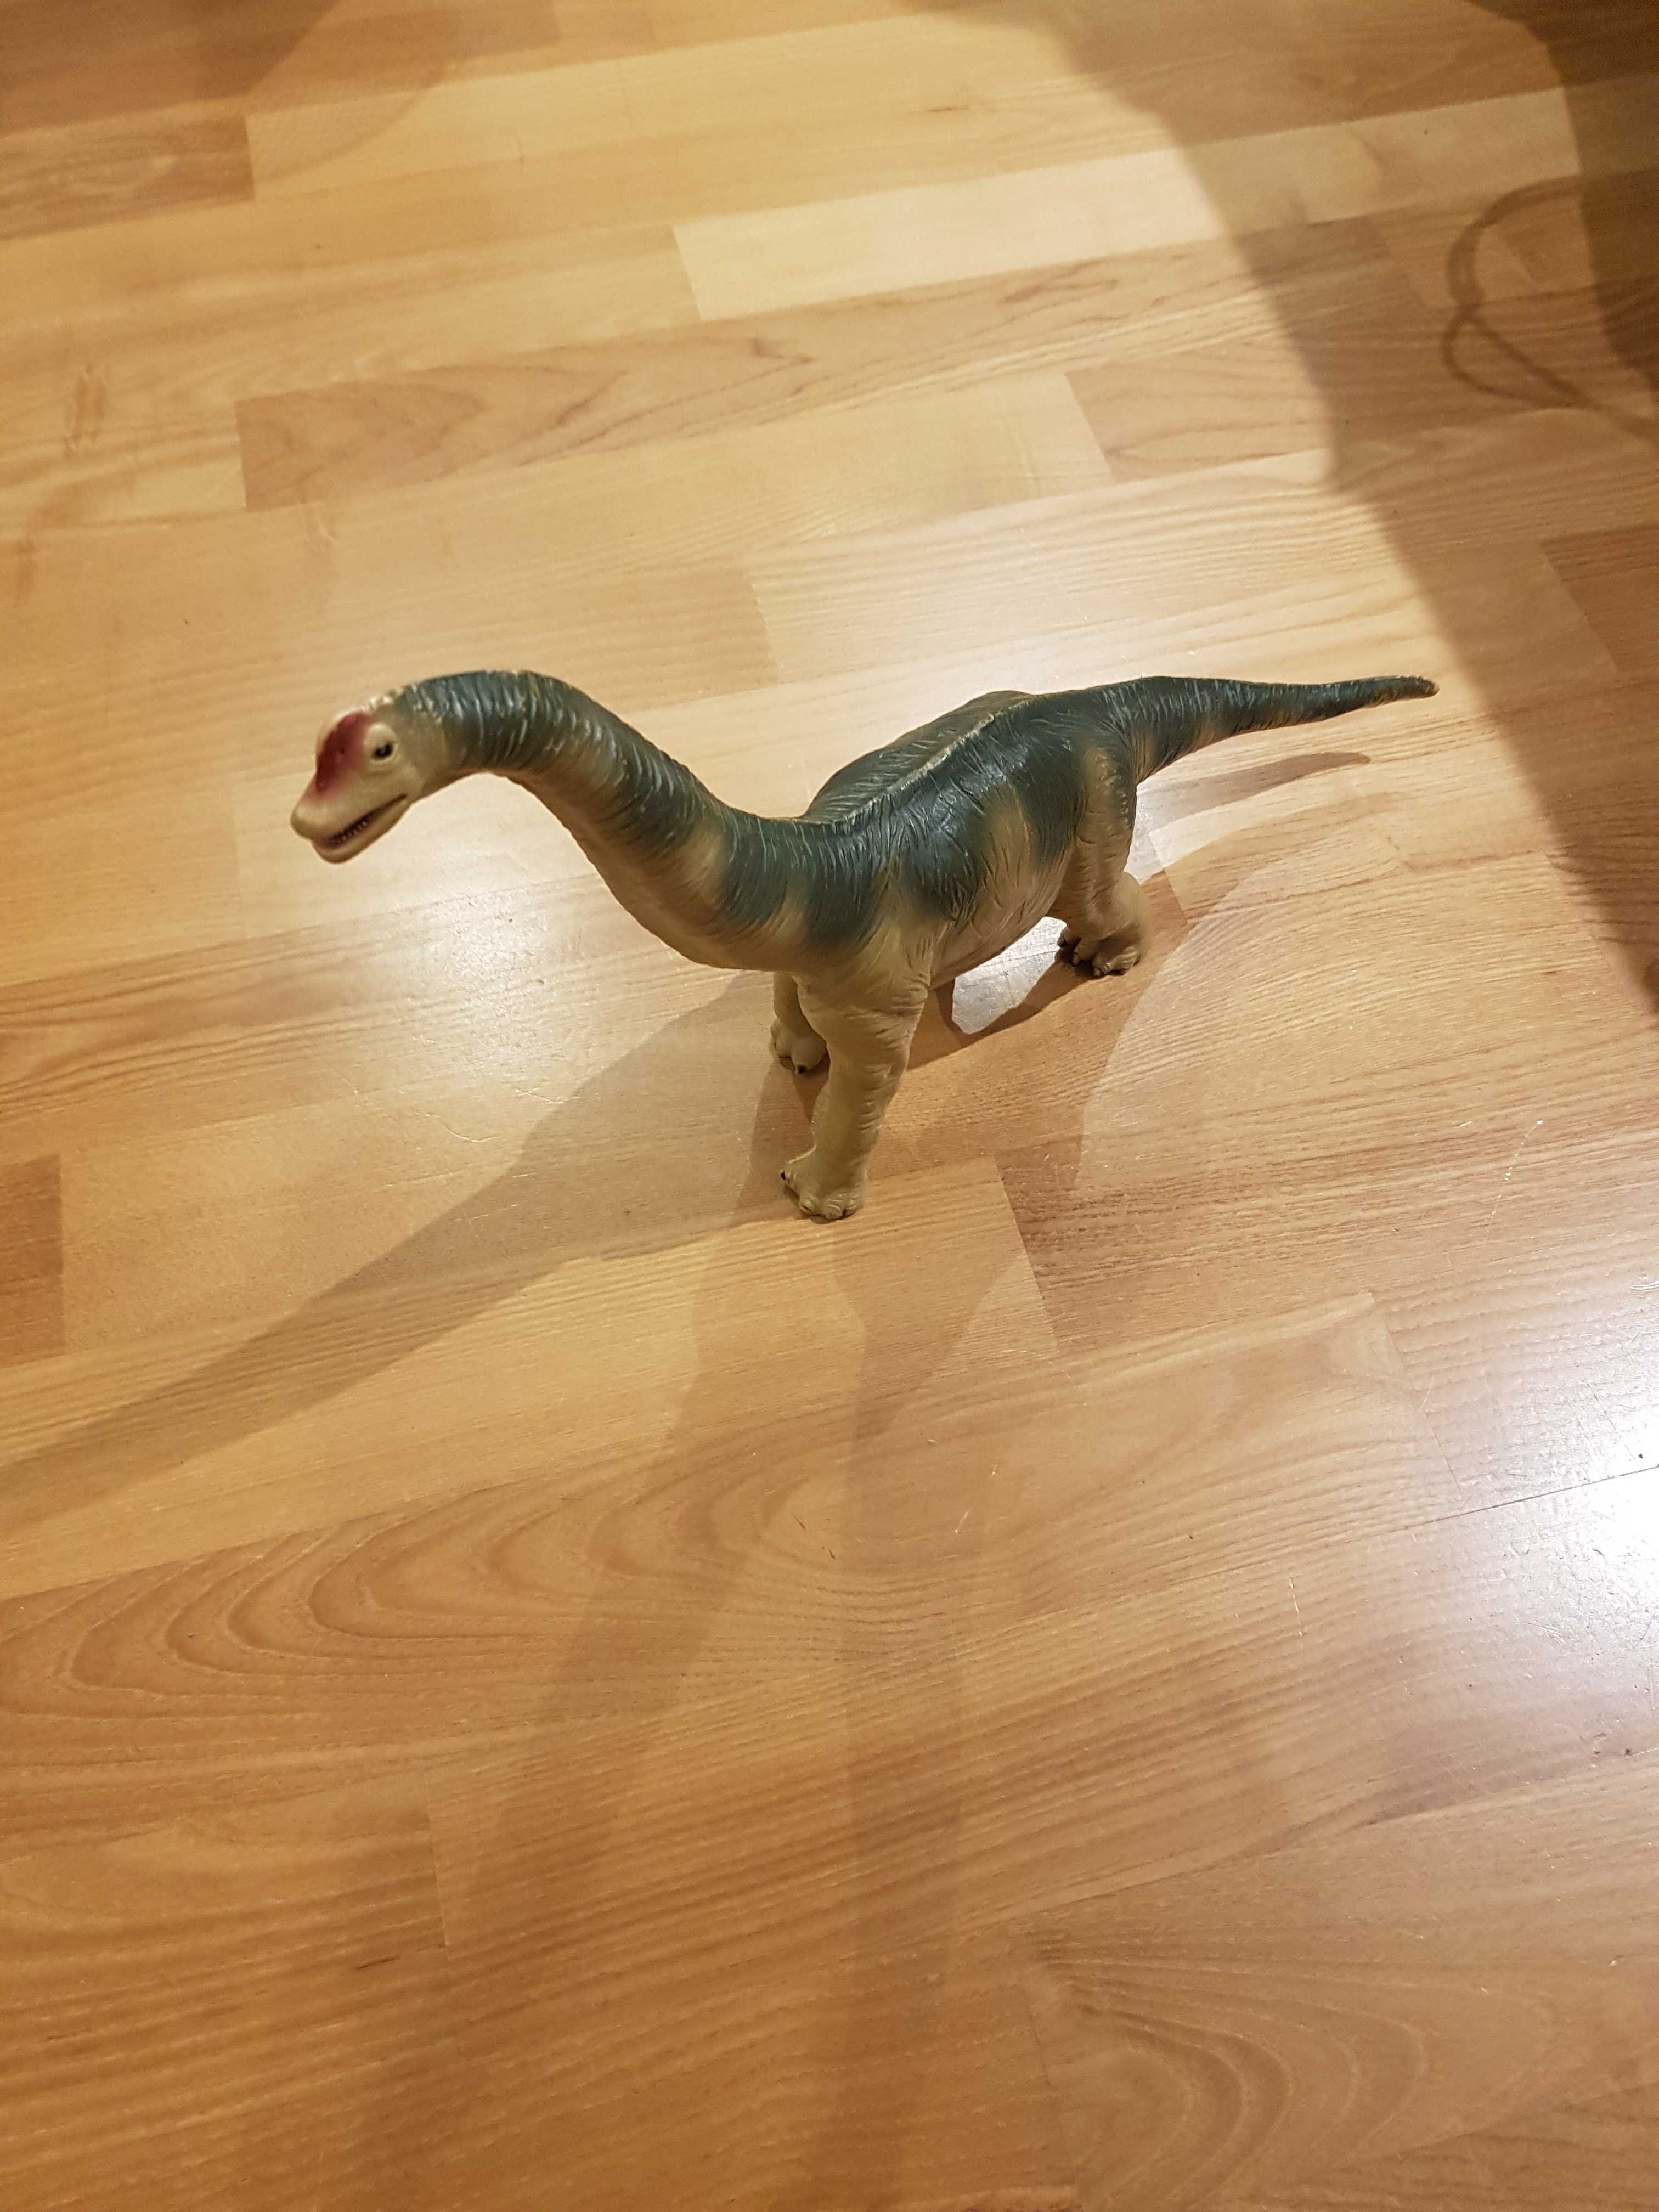 Dinozaur Brachiosaurus Diplodok figurka duża plastikowa